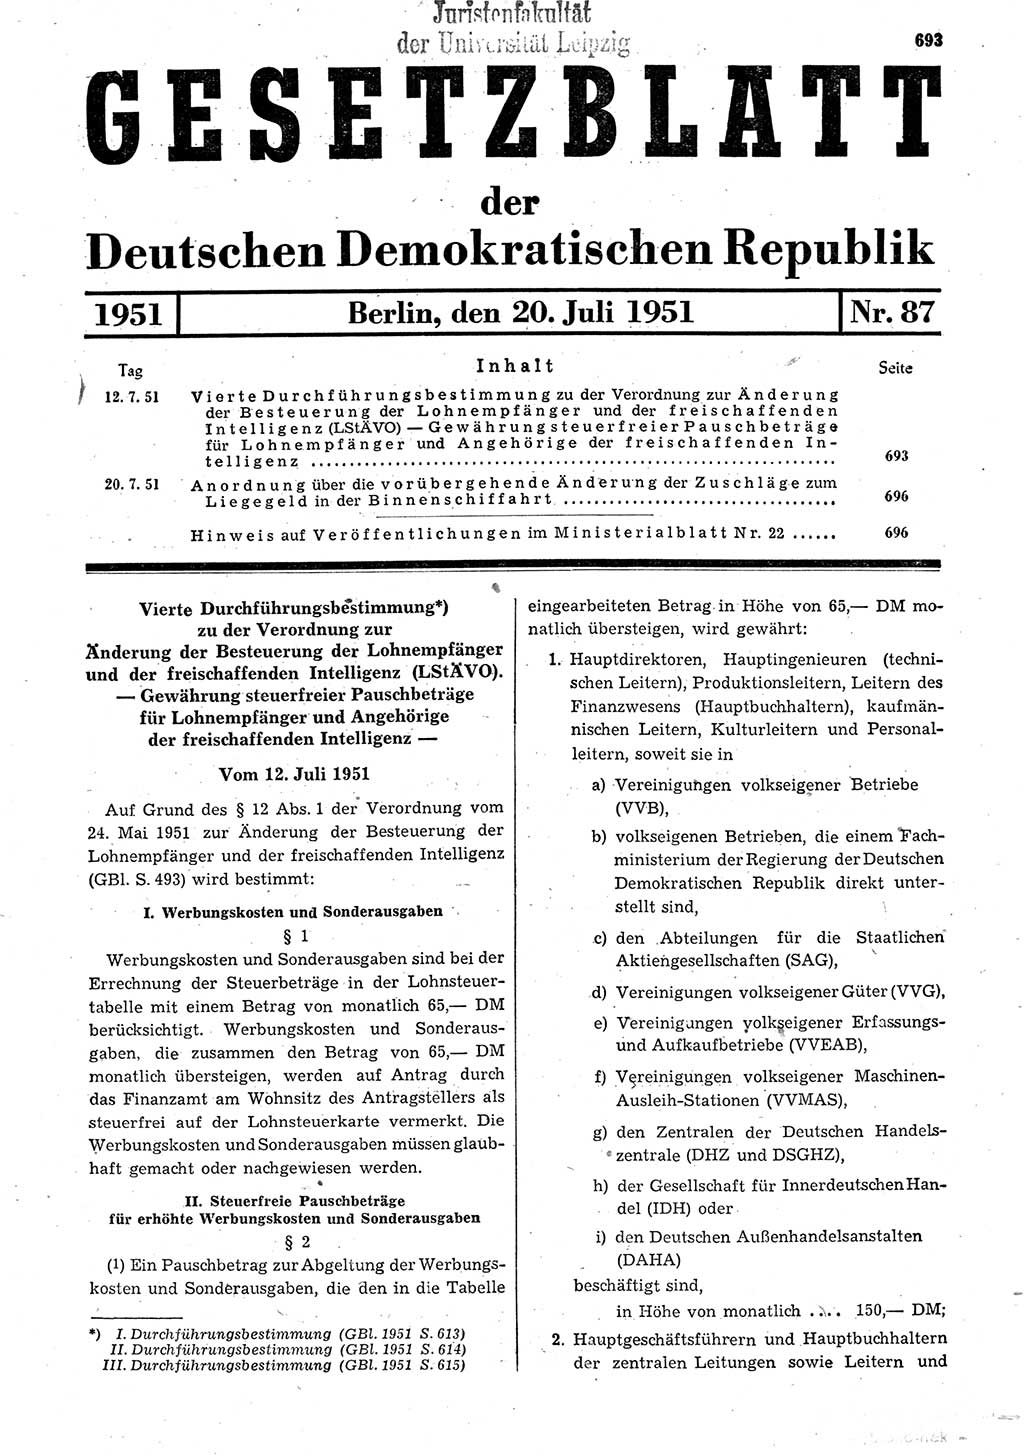 Gesetzblatt (GBl.) der Deutschen Demokratischen Republik (DDR) 1951, Seite 693 (GBl. DDR 1951, S. 693)